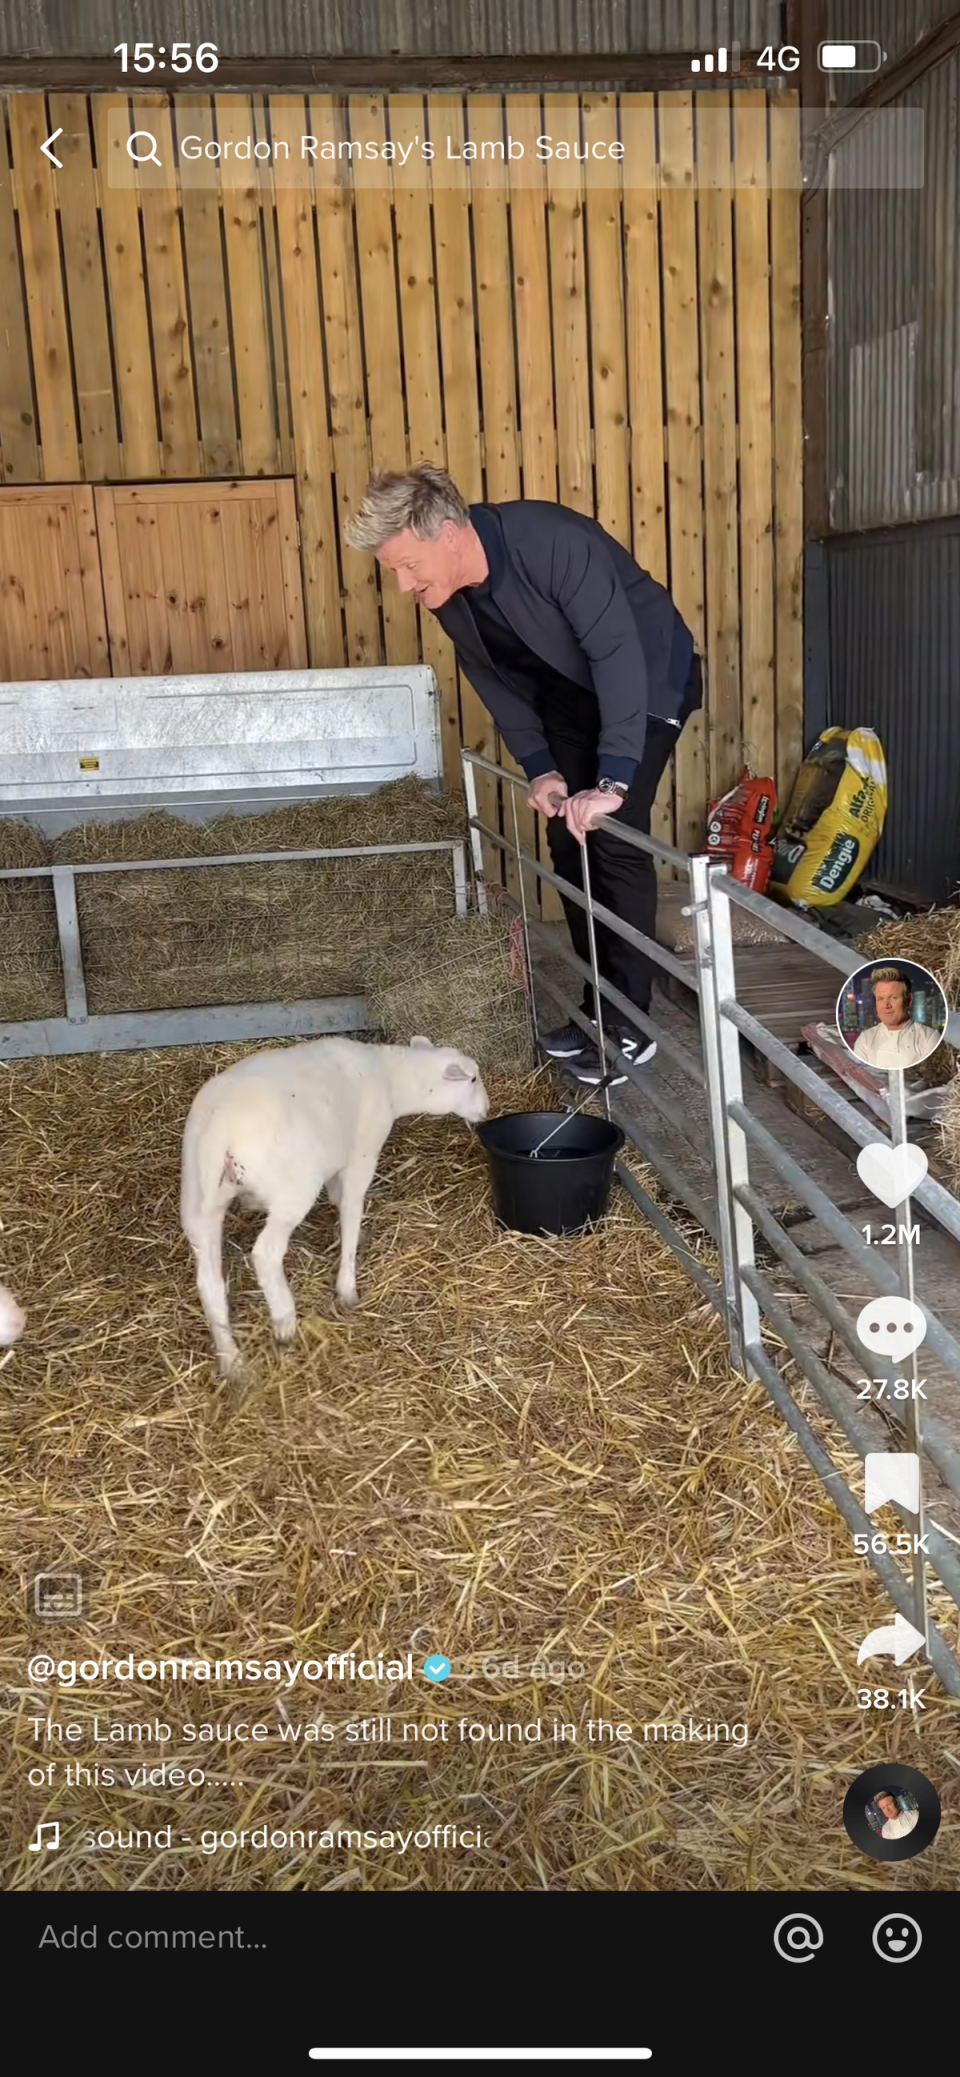 The chef gleefully goaded the lambs (Gordon Ramsay / TikTok)